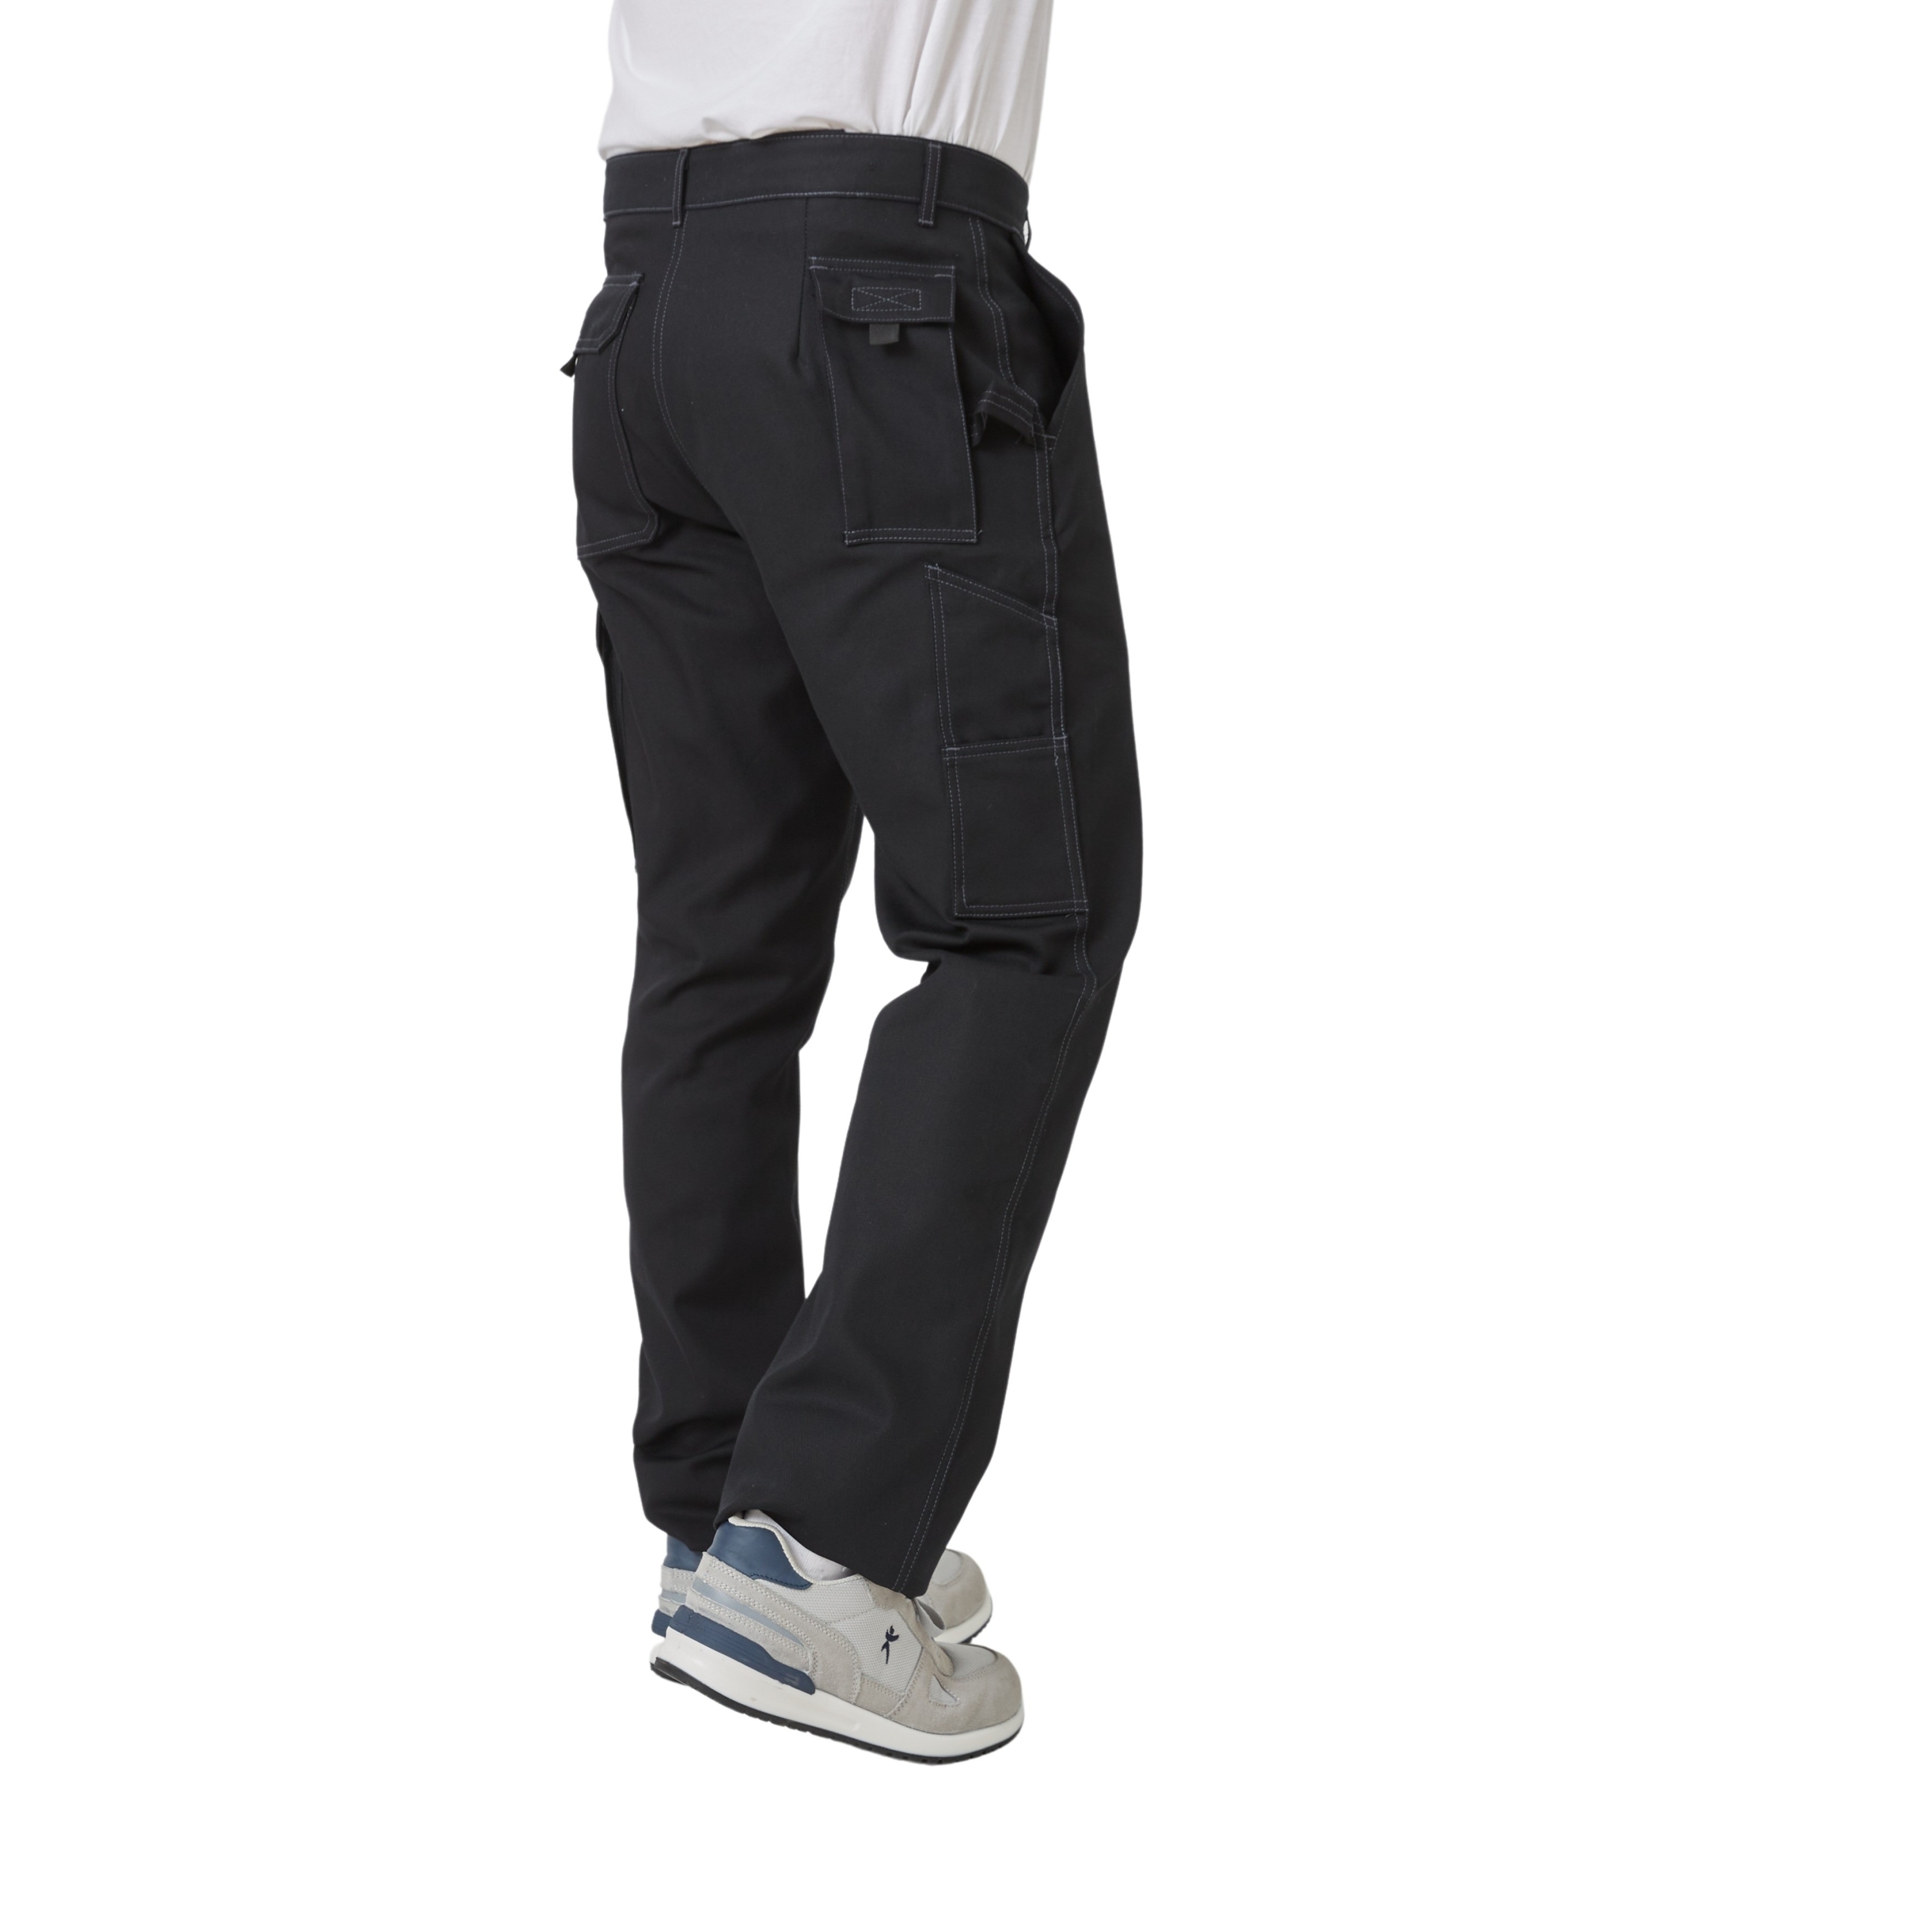 Pantalon de travail, Taille élastiquée au dos pour un ajustement optimal